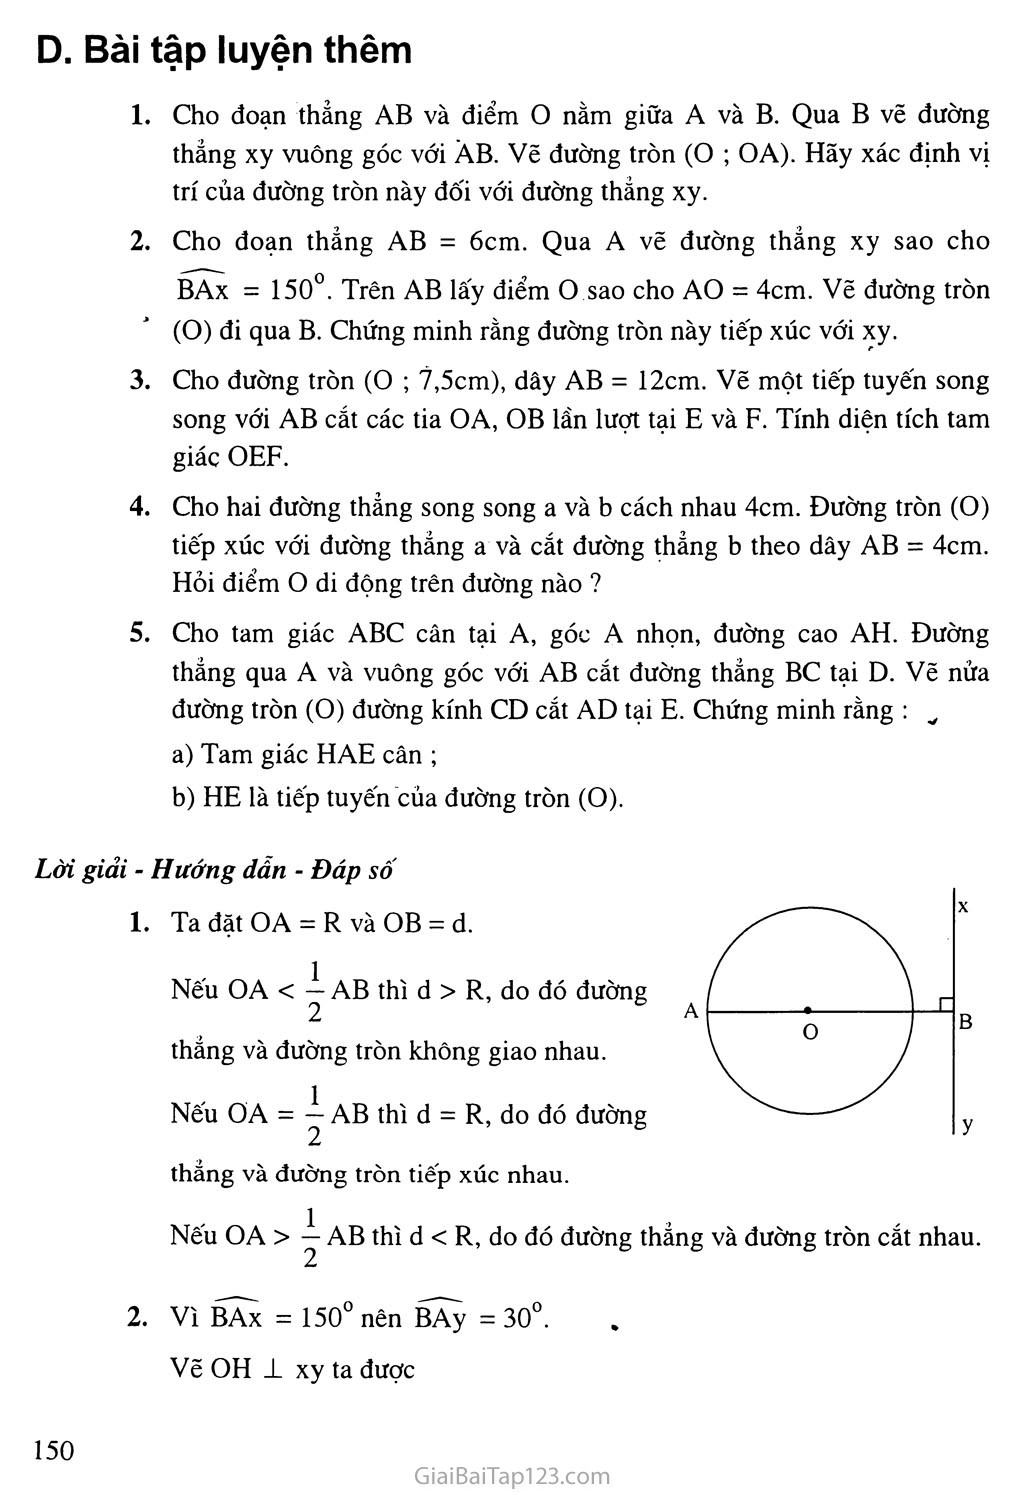 Bài 4. Vi trí tương đối của đường thẳng và đường tròn + 
Bài 5. Dấu hiệu nhận biết tiếp tuyến của đường tròn trang 5